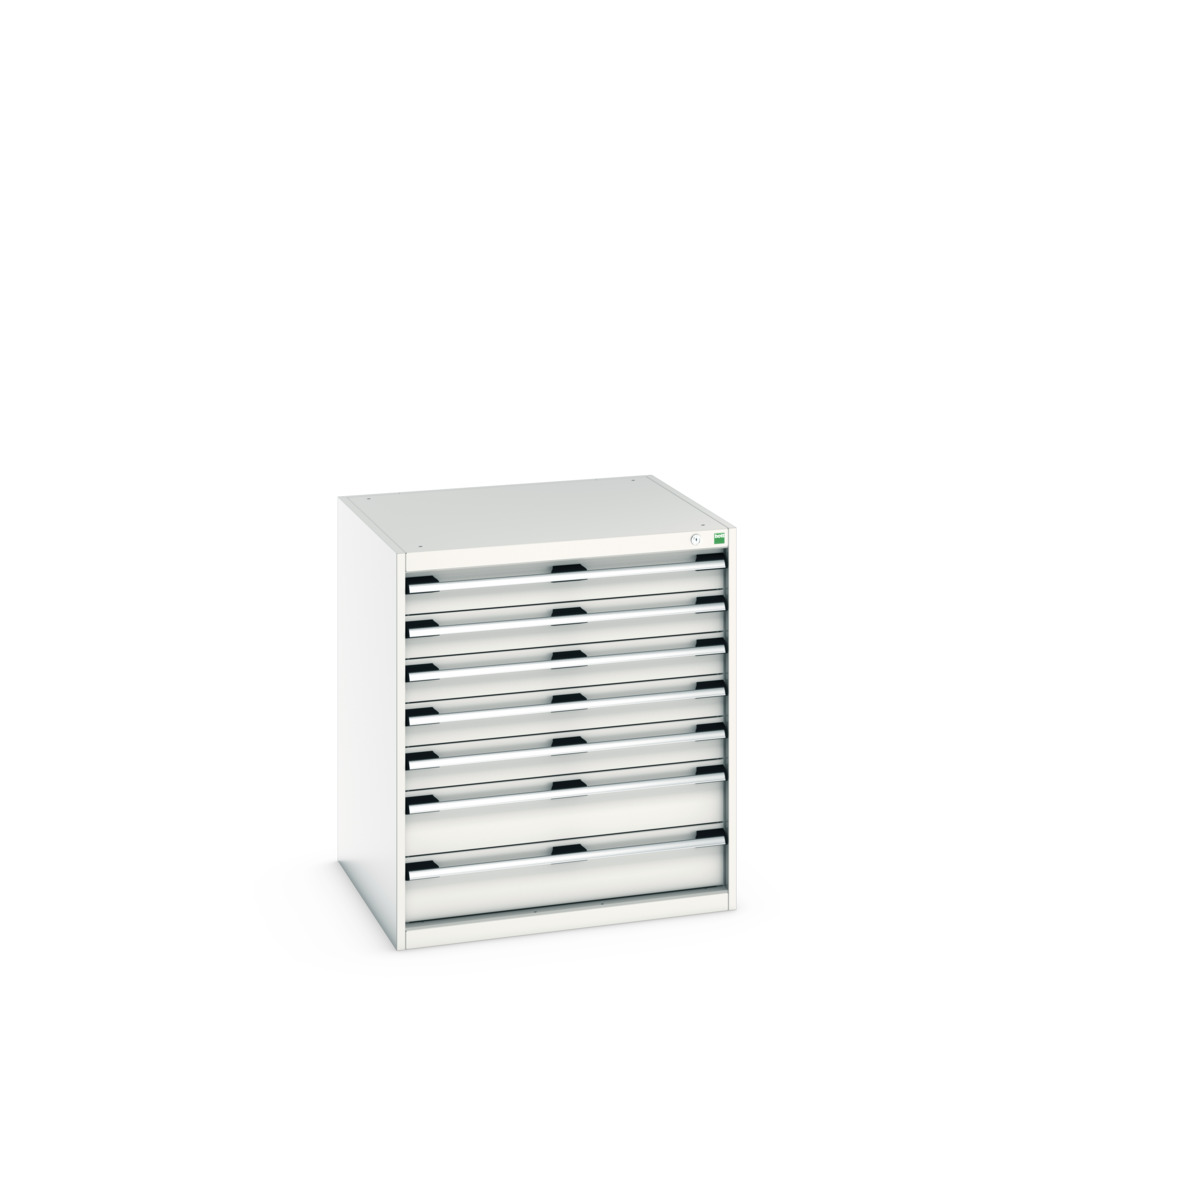 40028109.16V - cubio drawer cabinet